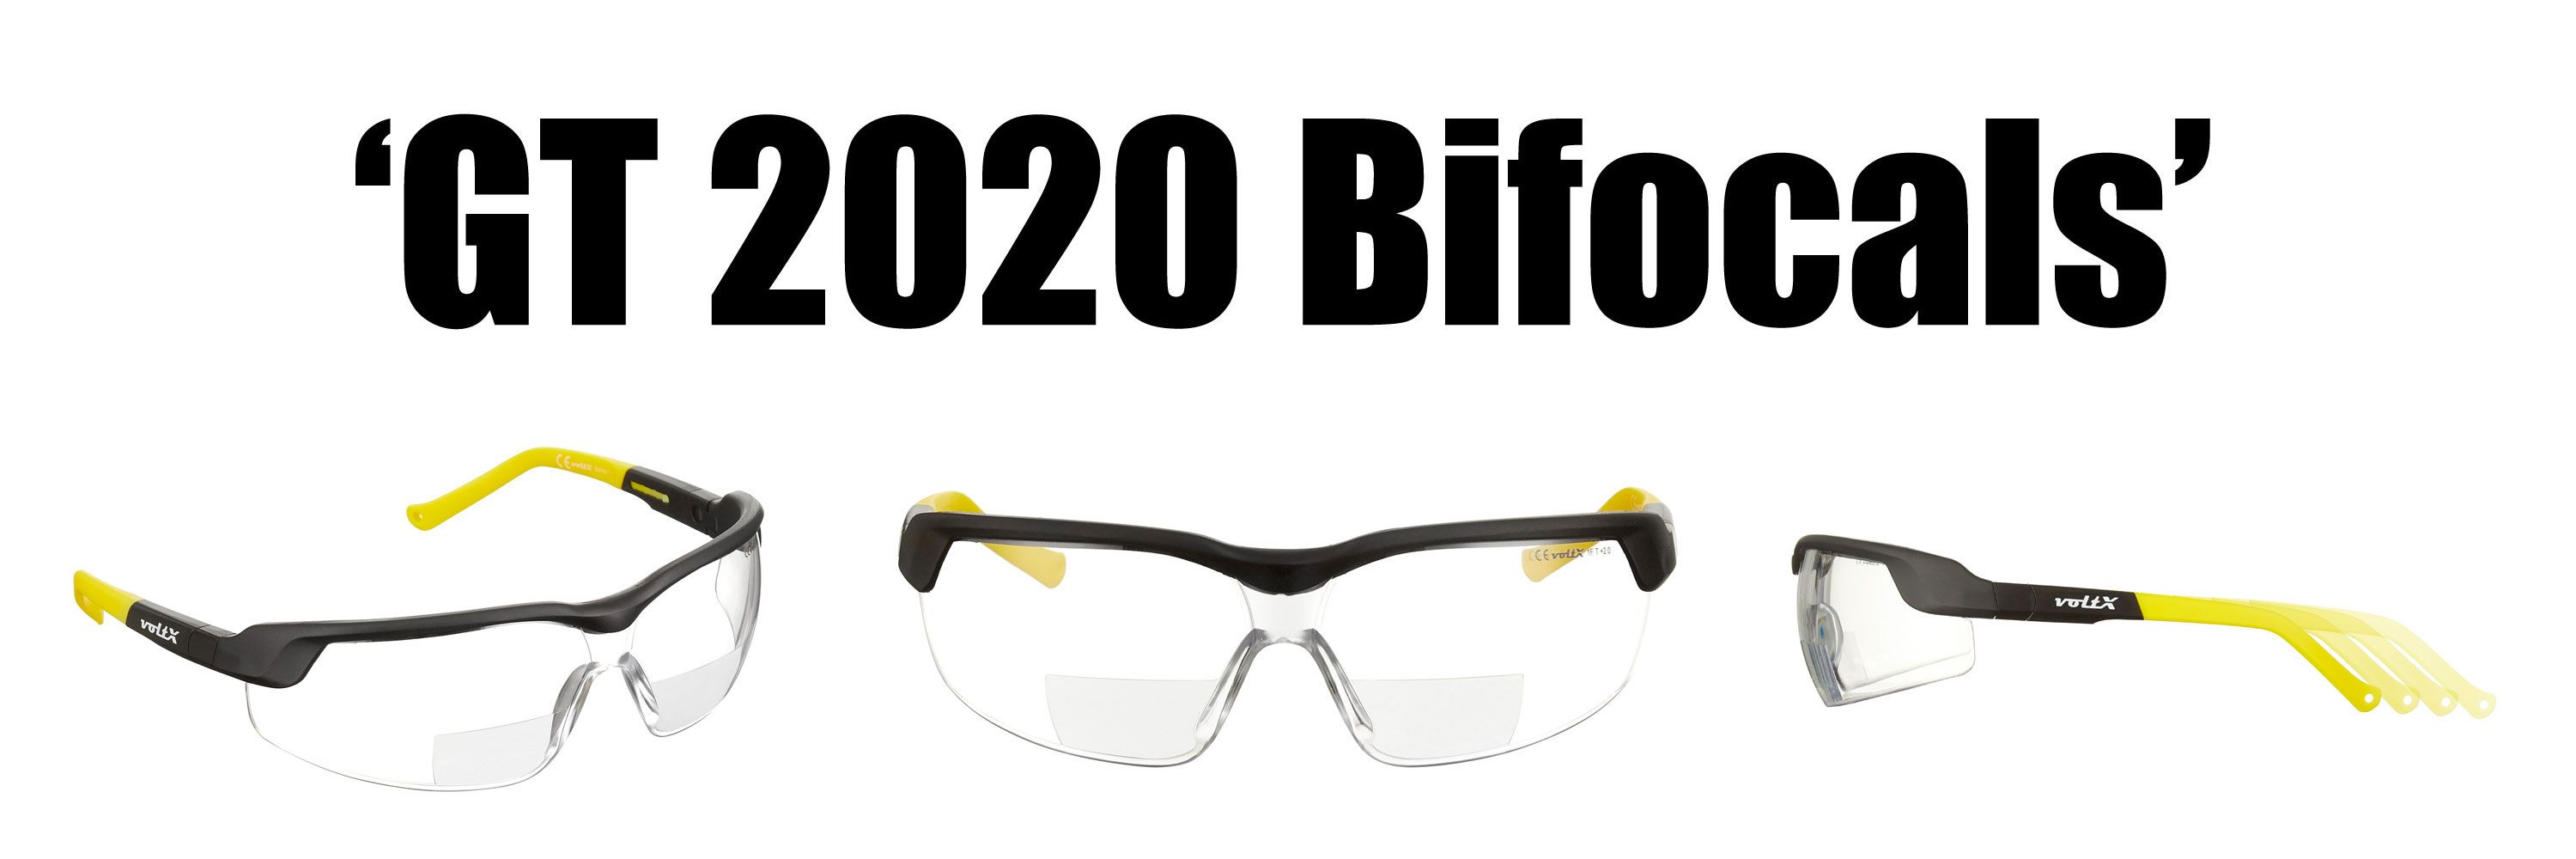 Réglables UV400 voltX GT Adjustable 2020 Model Bifocal Safety Glasses Transparentes dioptrie +3.0 Lunettes de sécurité de Lecture BIFOCALES, Certifiées CE EN166FT Revêtement anticondensation 